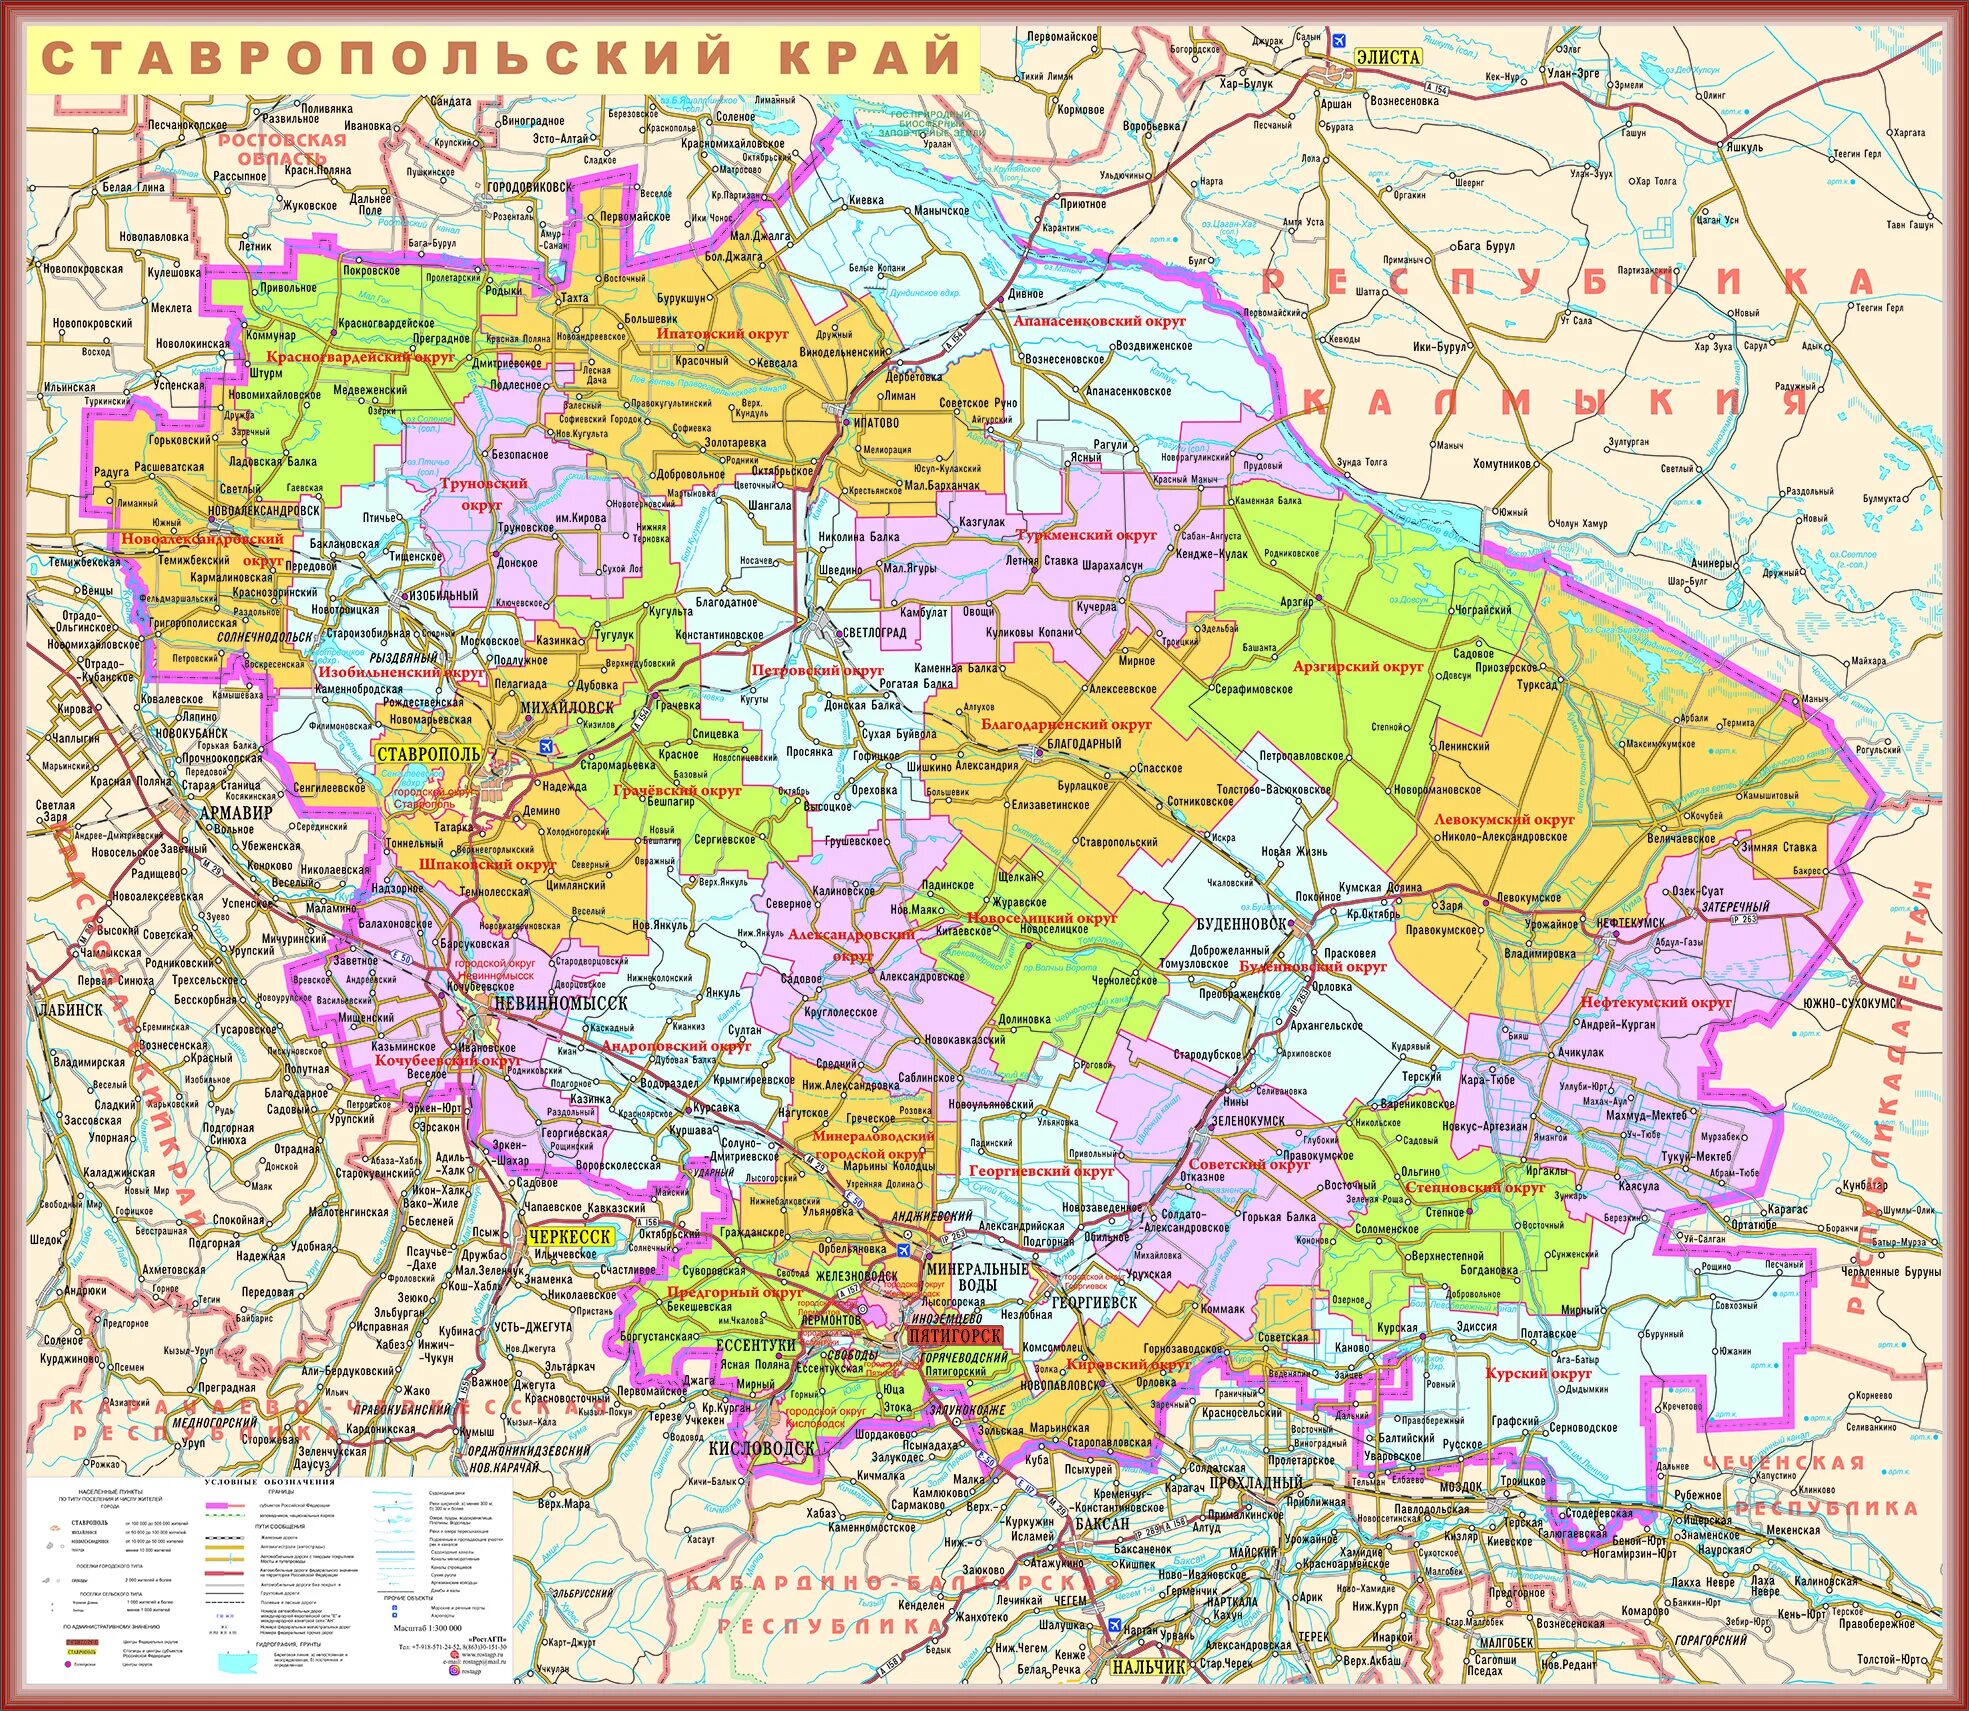 Карта Ставропольского края подробная. Карта Ставропольского кра. Картаставрополского края. Карта ставропльскогокрая.